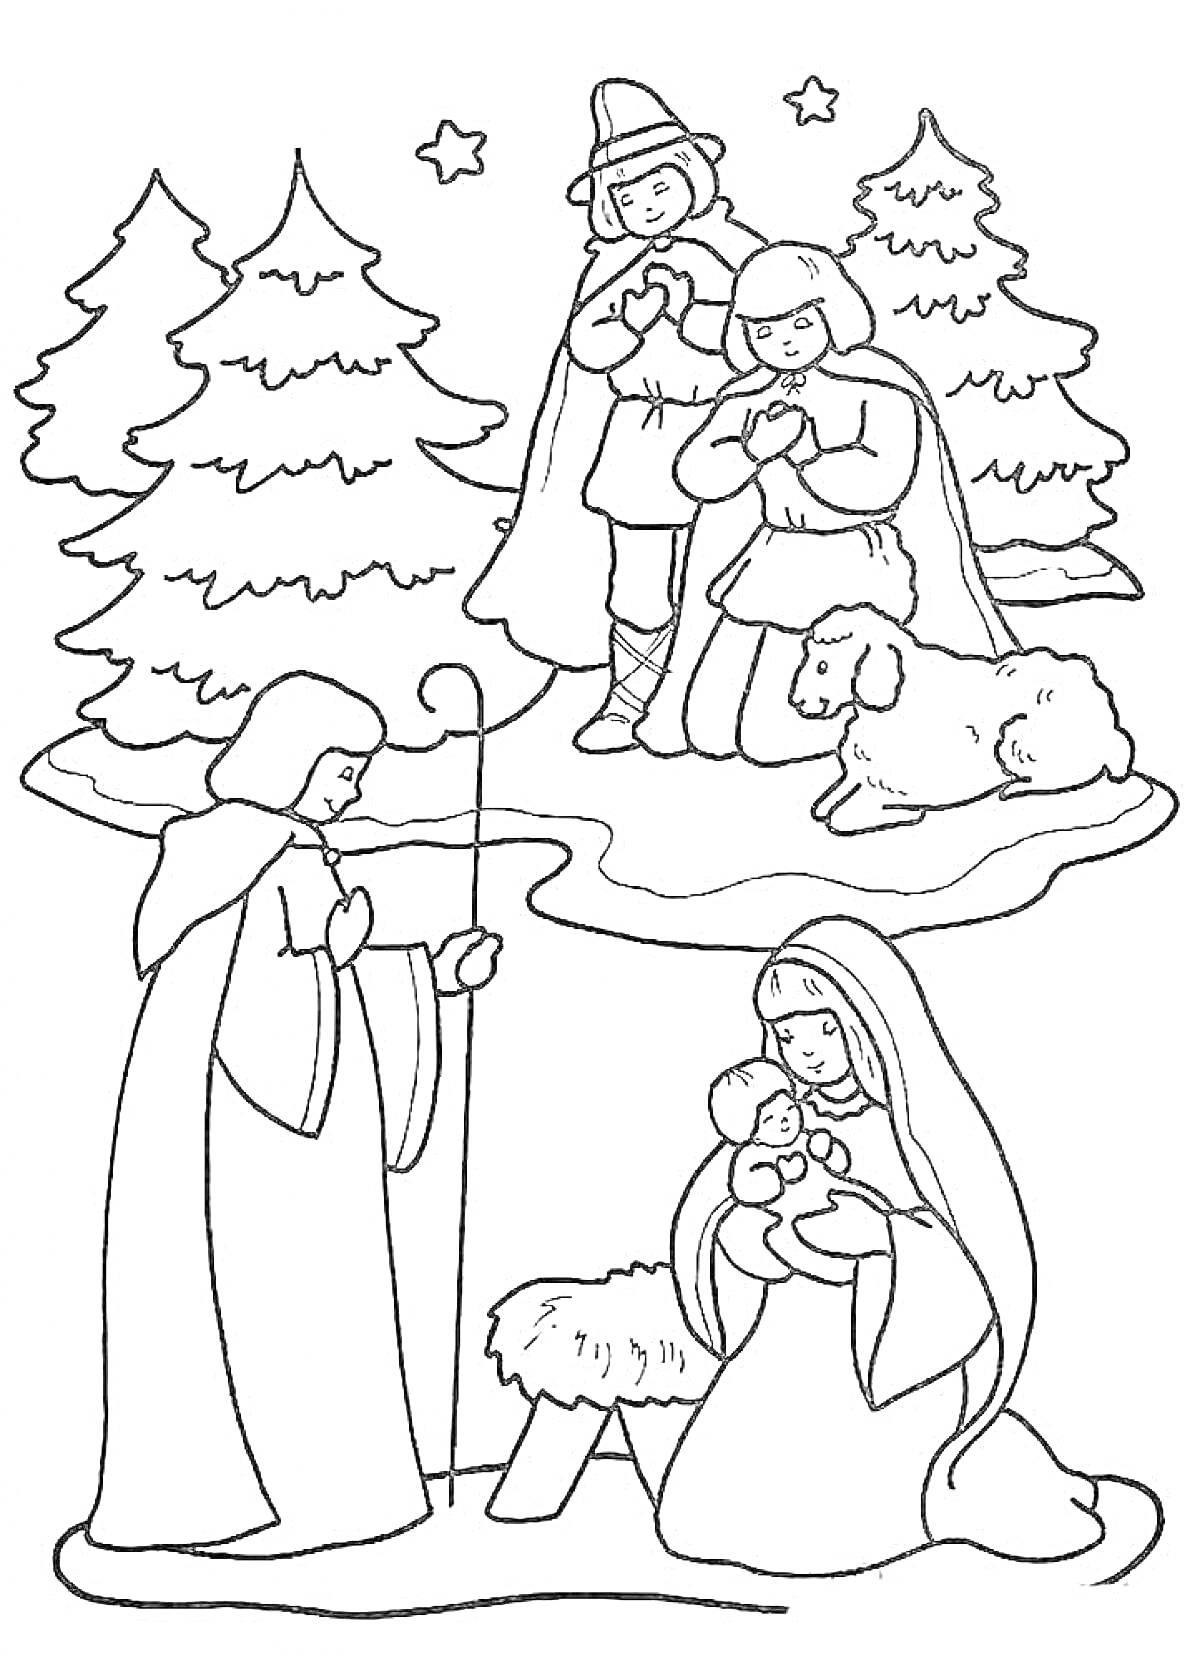 Рождественская сцена: пастухи, Мария с младенцем Иисусом у яслей, ангелы, овечка и елки со звездами на заднем фоне